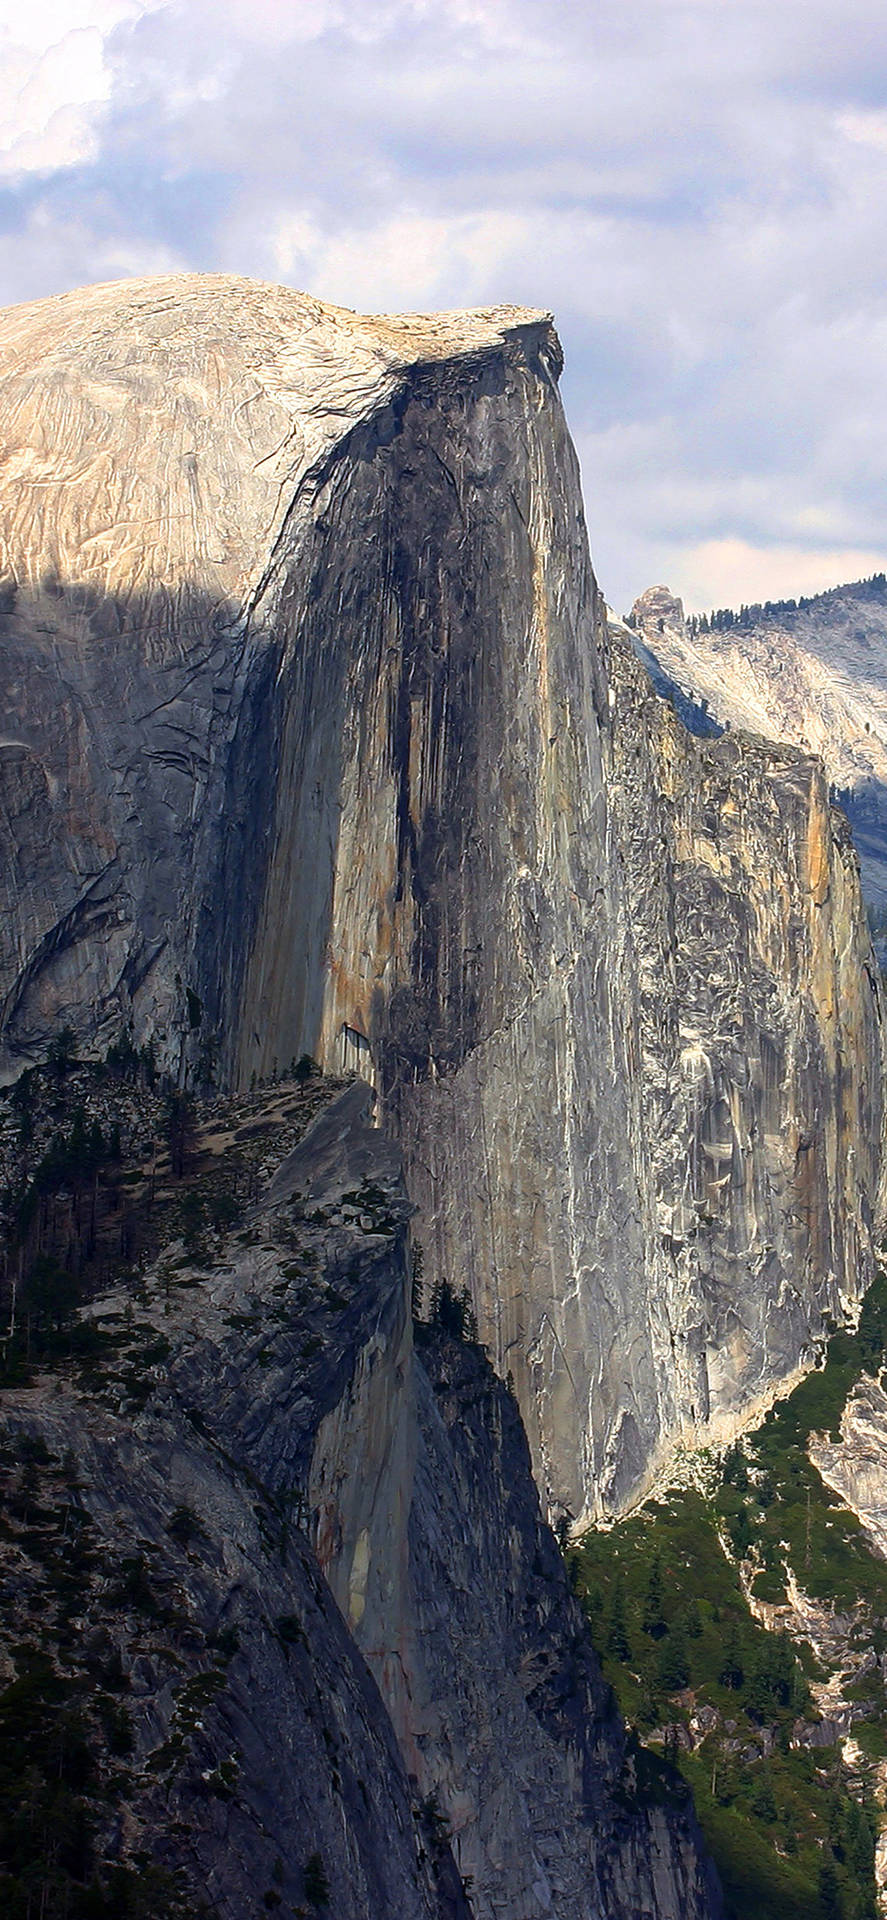 Tag en pause fra det hektiske liv i byen og besøg skønheden i Yosemite. Wallpaper